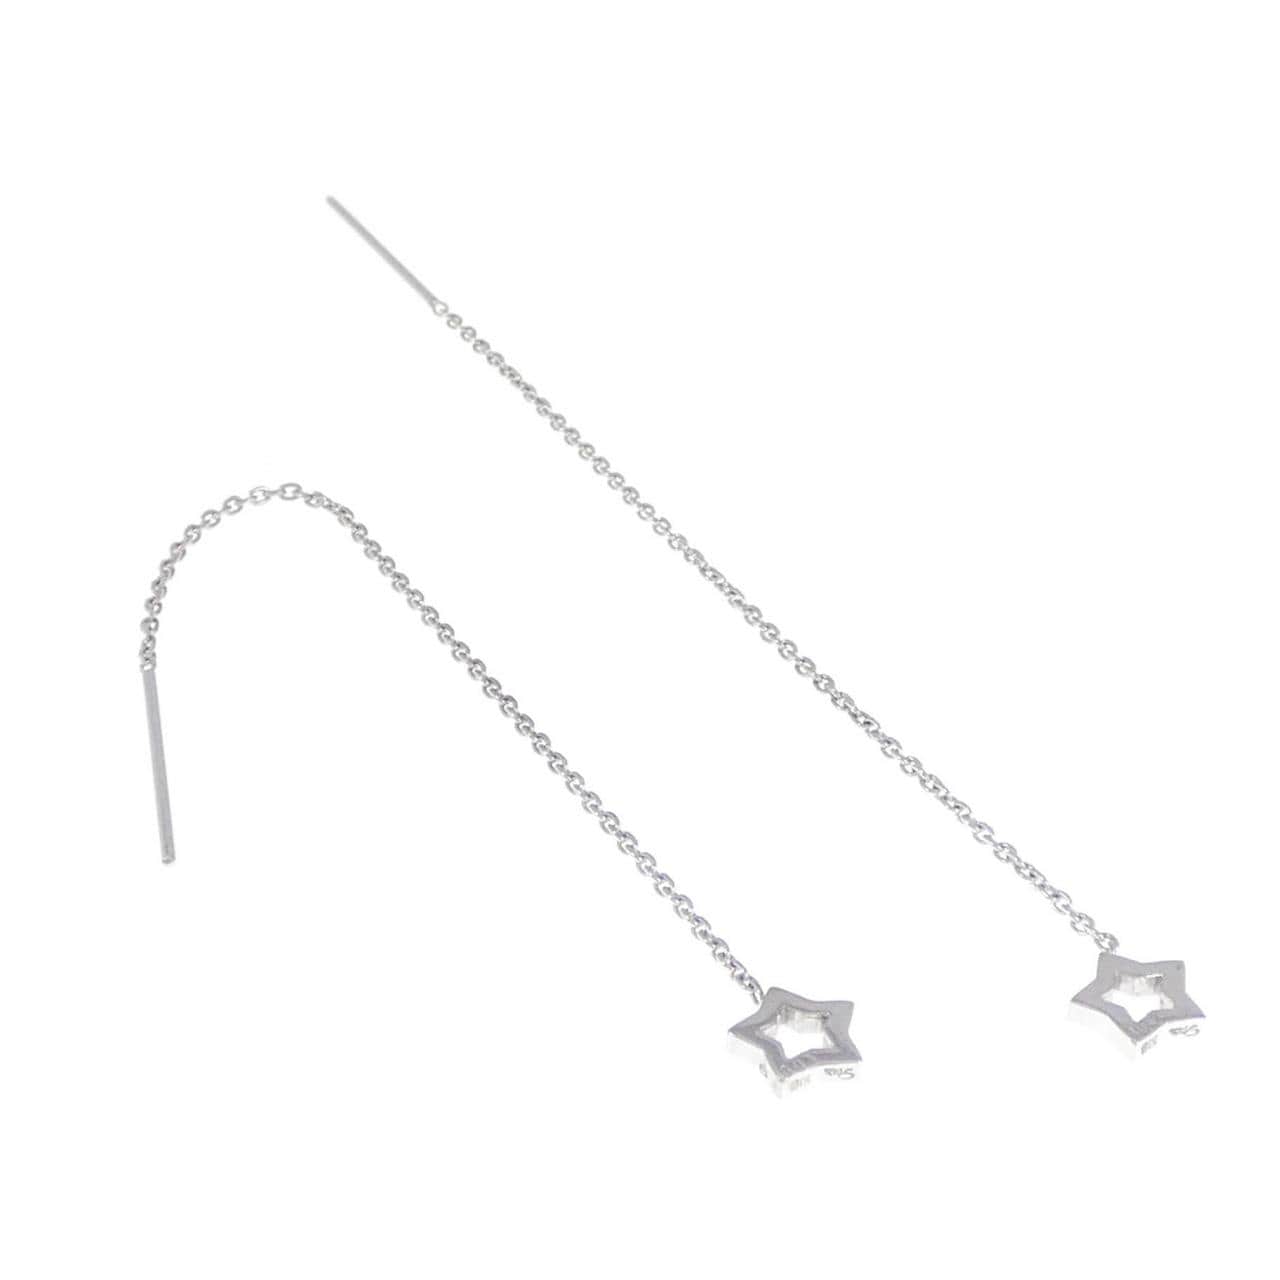 STAR JEWELRY earrings 0.02CT